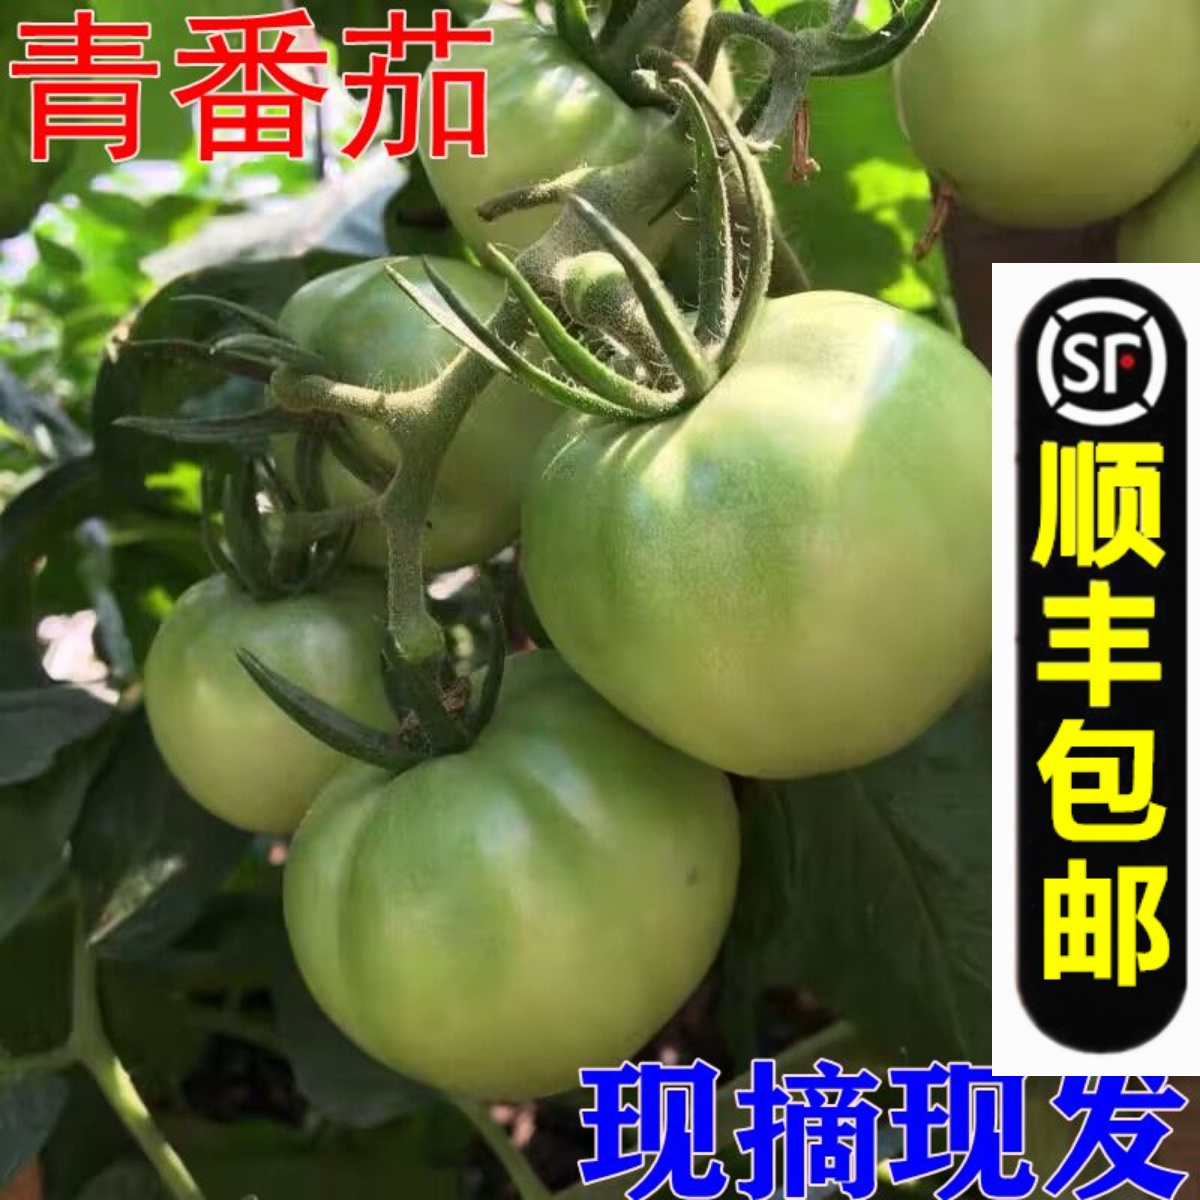 青番茄青西红柿新鲜柿子酸甜爆炒未成熟农家绿西红柿现货丰网5斤